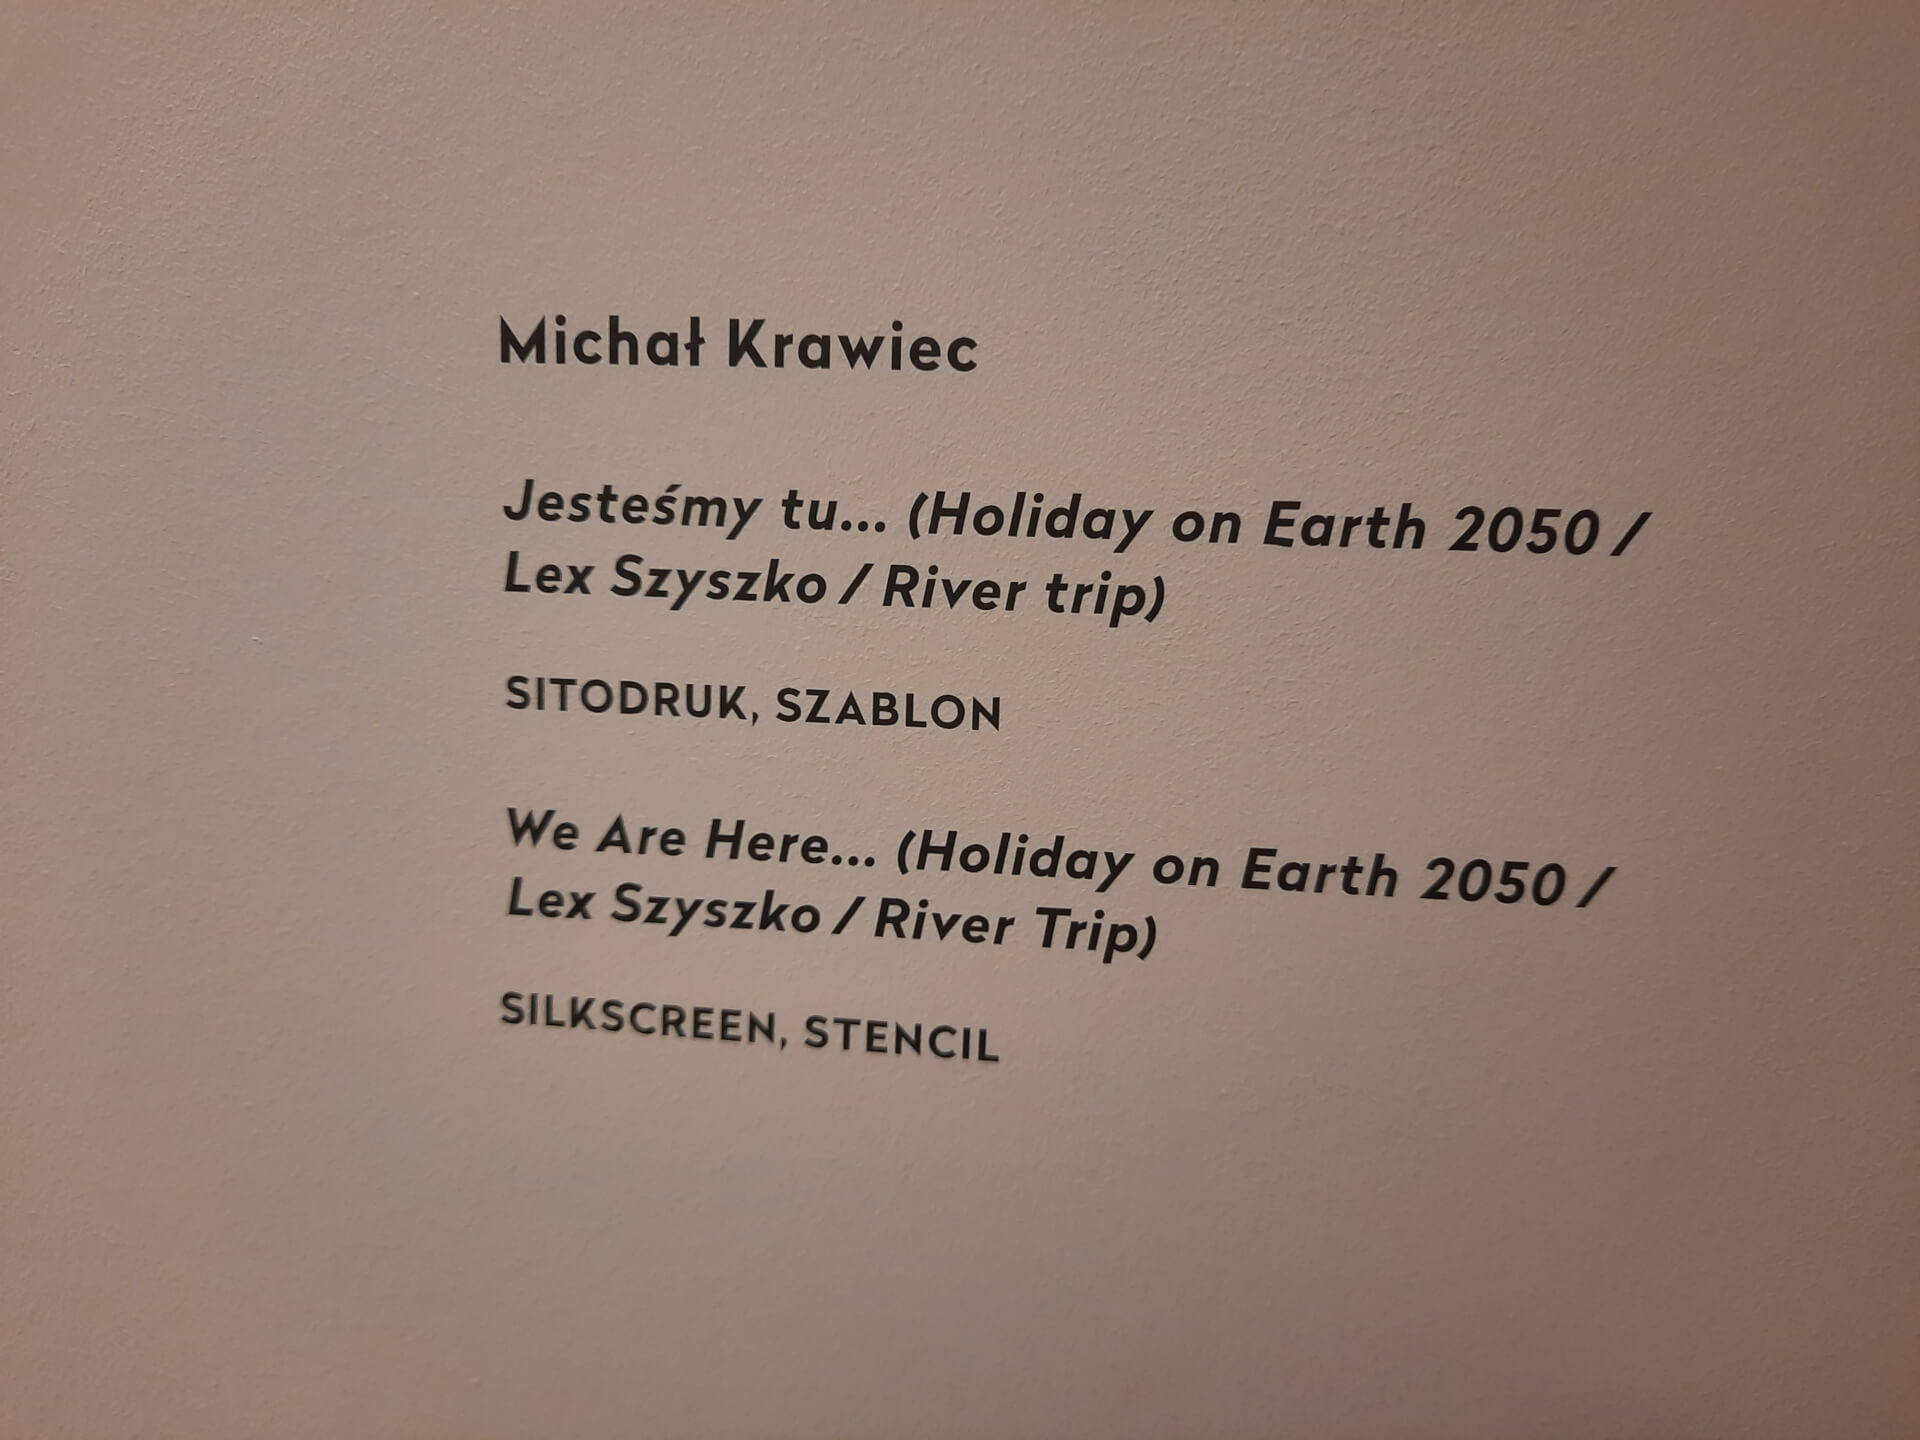 Napis z całym tytułem pracy Michała Krawca po interwencji dyrektor Muzeum Śląskiego